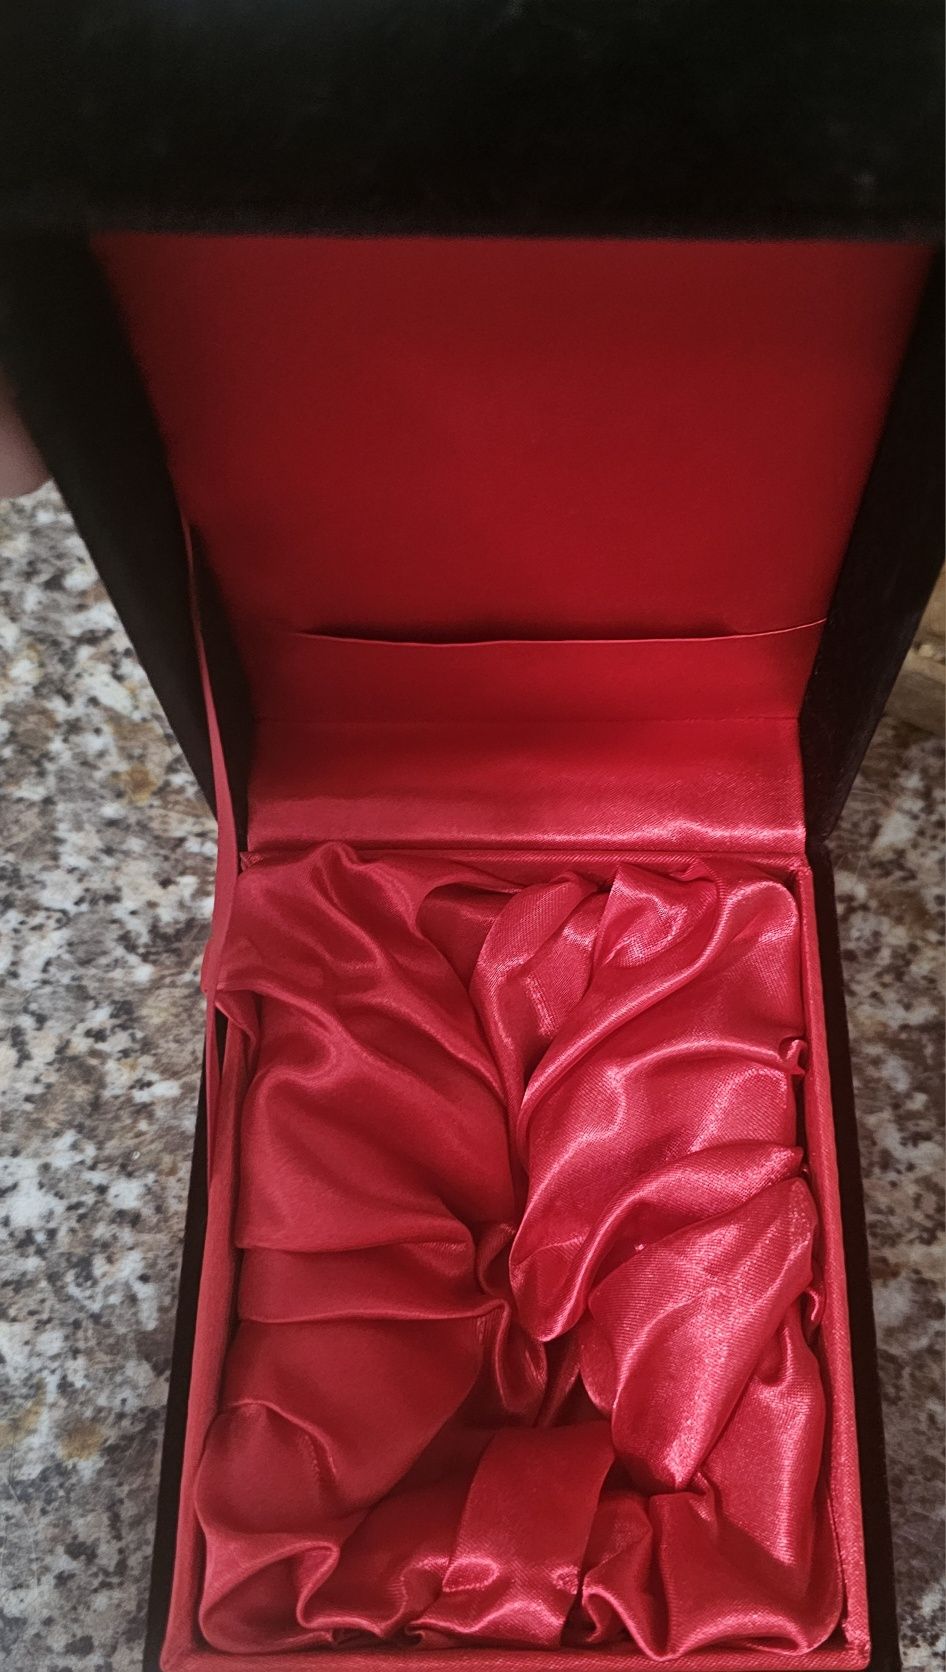 Vând cutie originala de parfum de nișă de la Fragance du Bois Milano